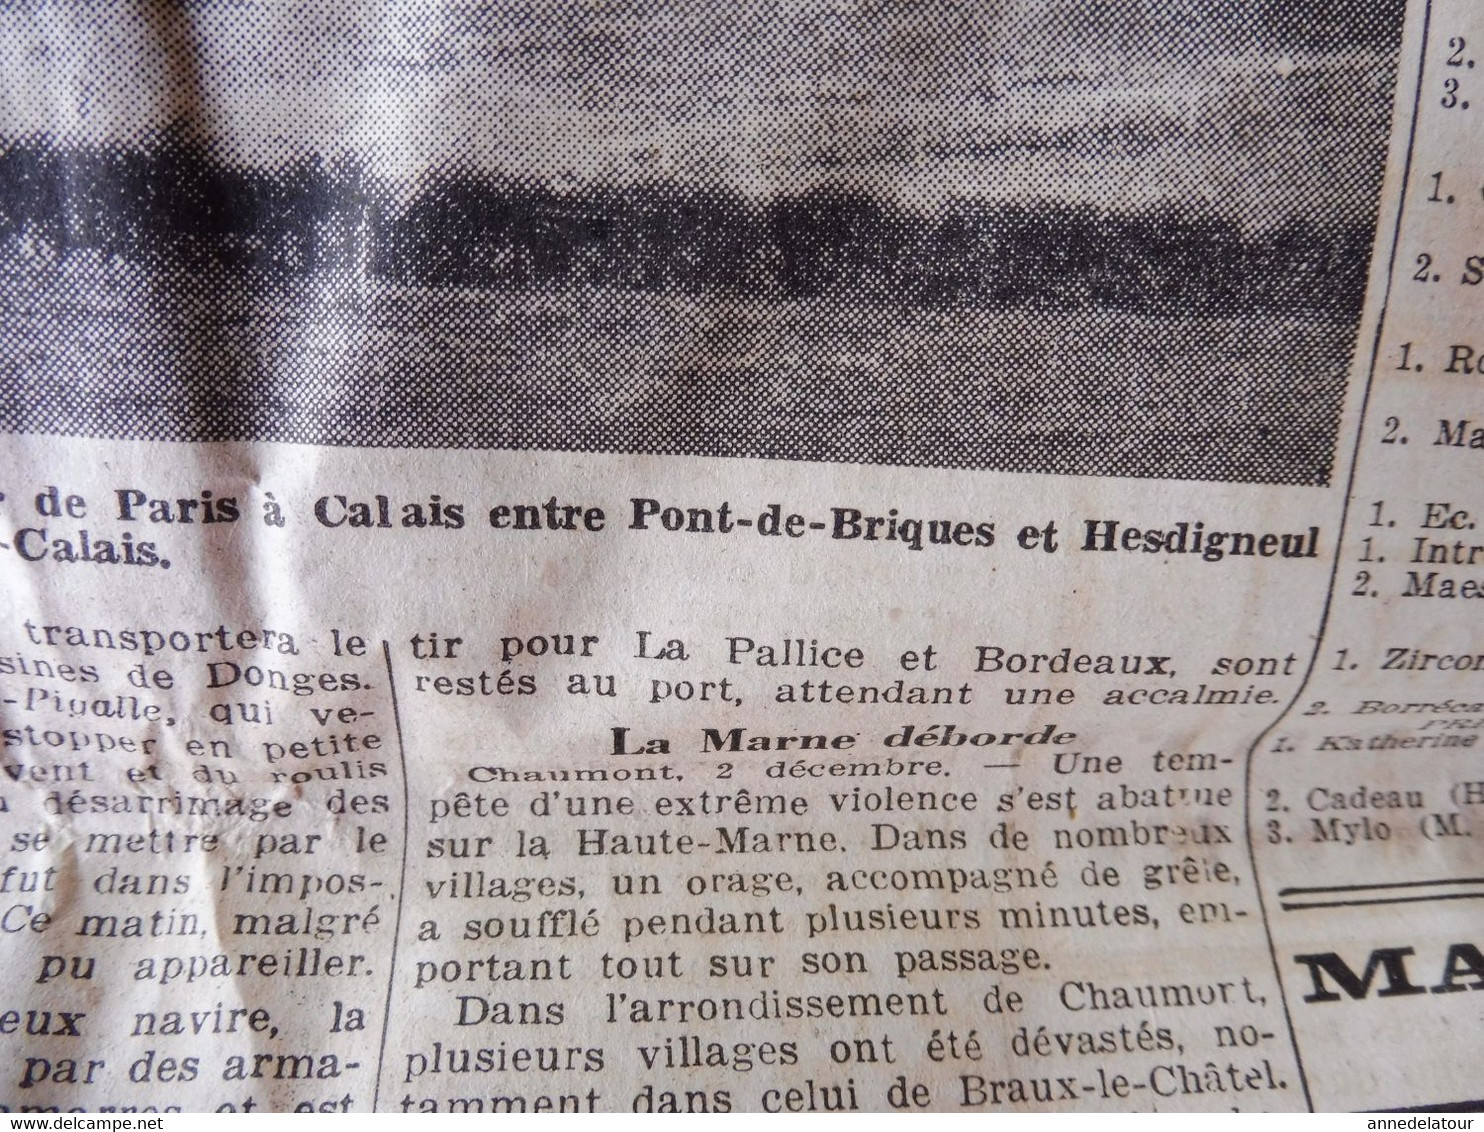 1935 L'AMI DU PEUPLE:  Masque à Gaz pour cheval et chien ; Les éclaireurs de l'armée italienne ; Front populaire ; etc